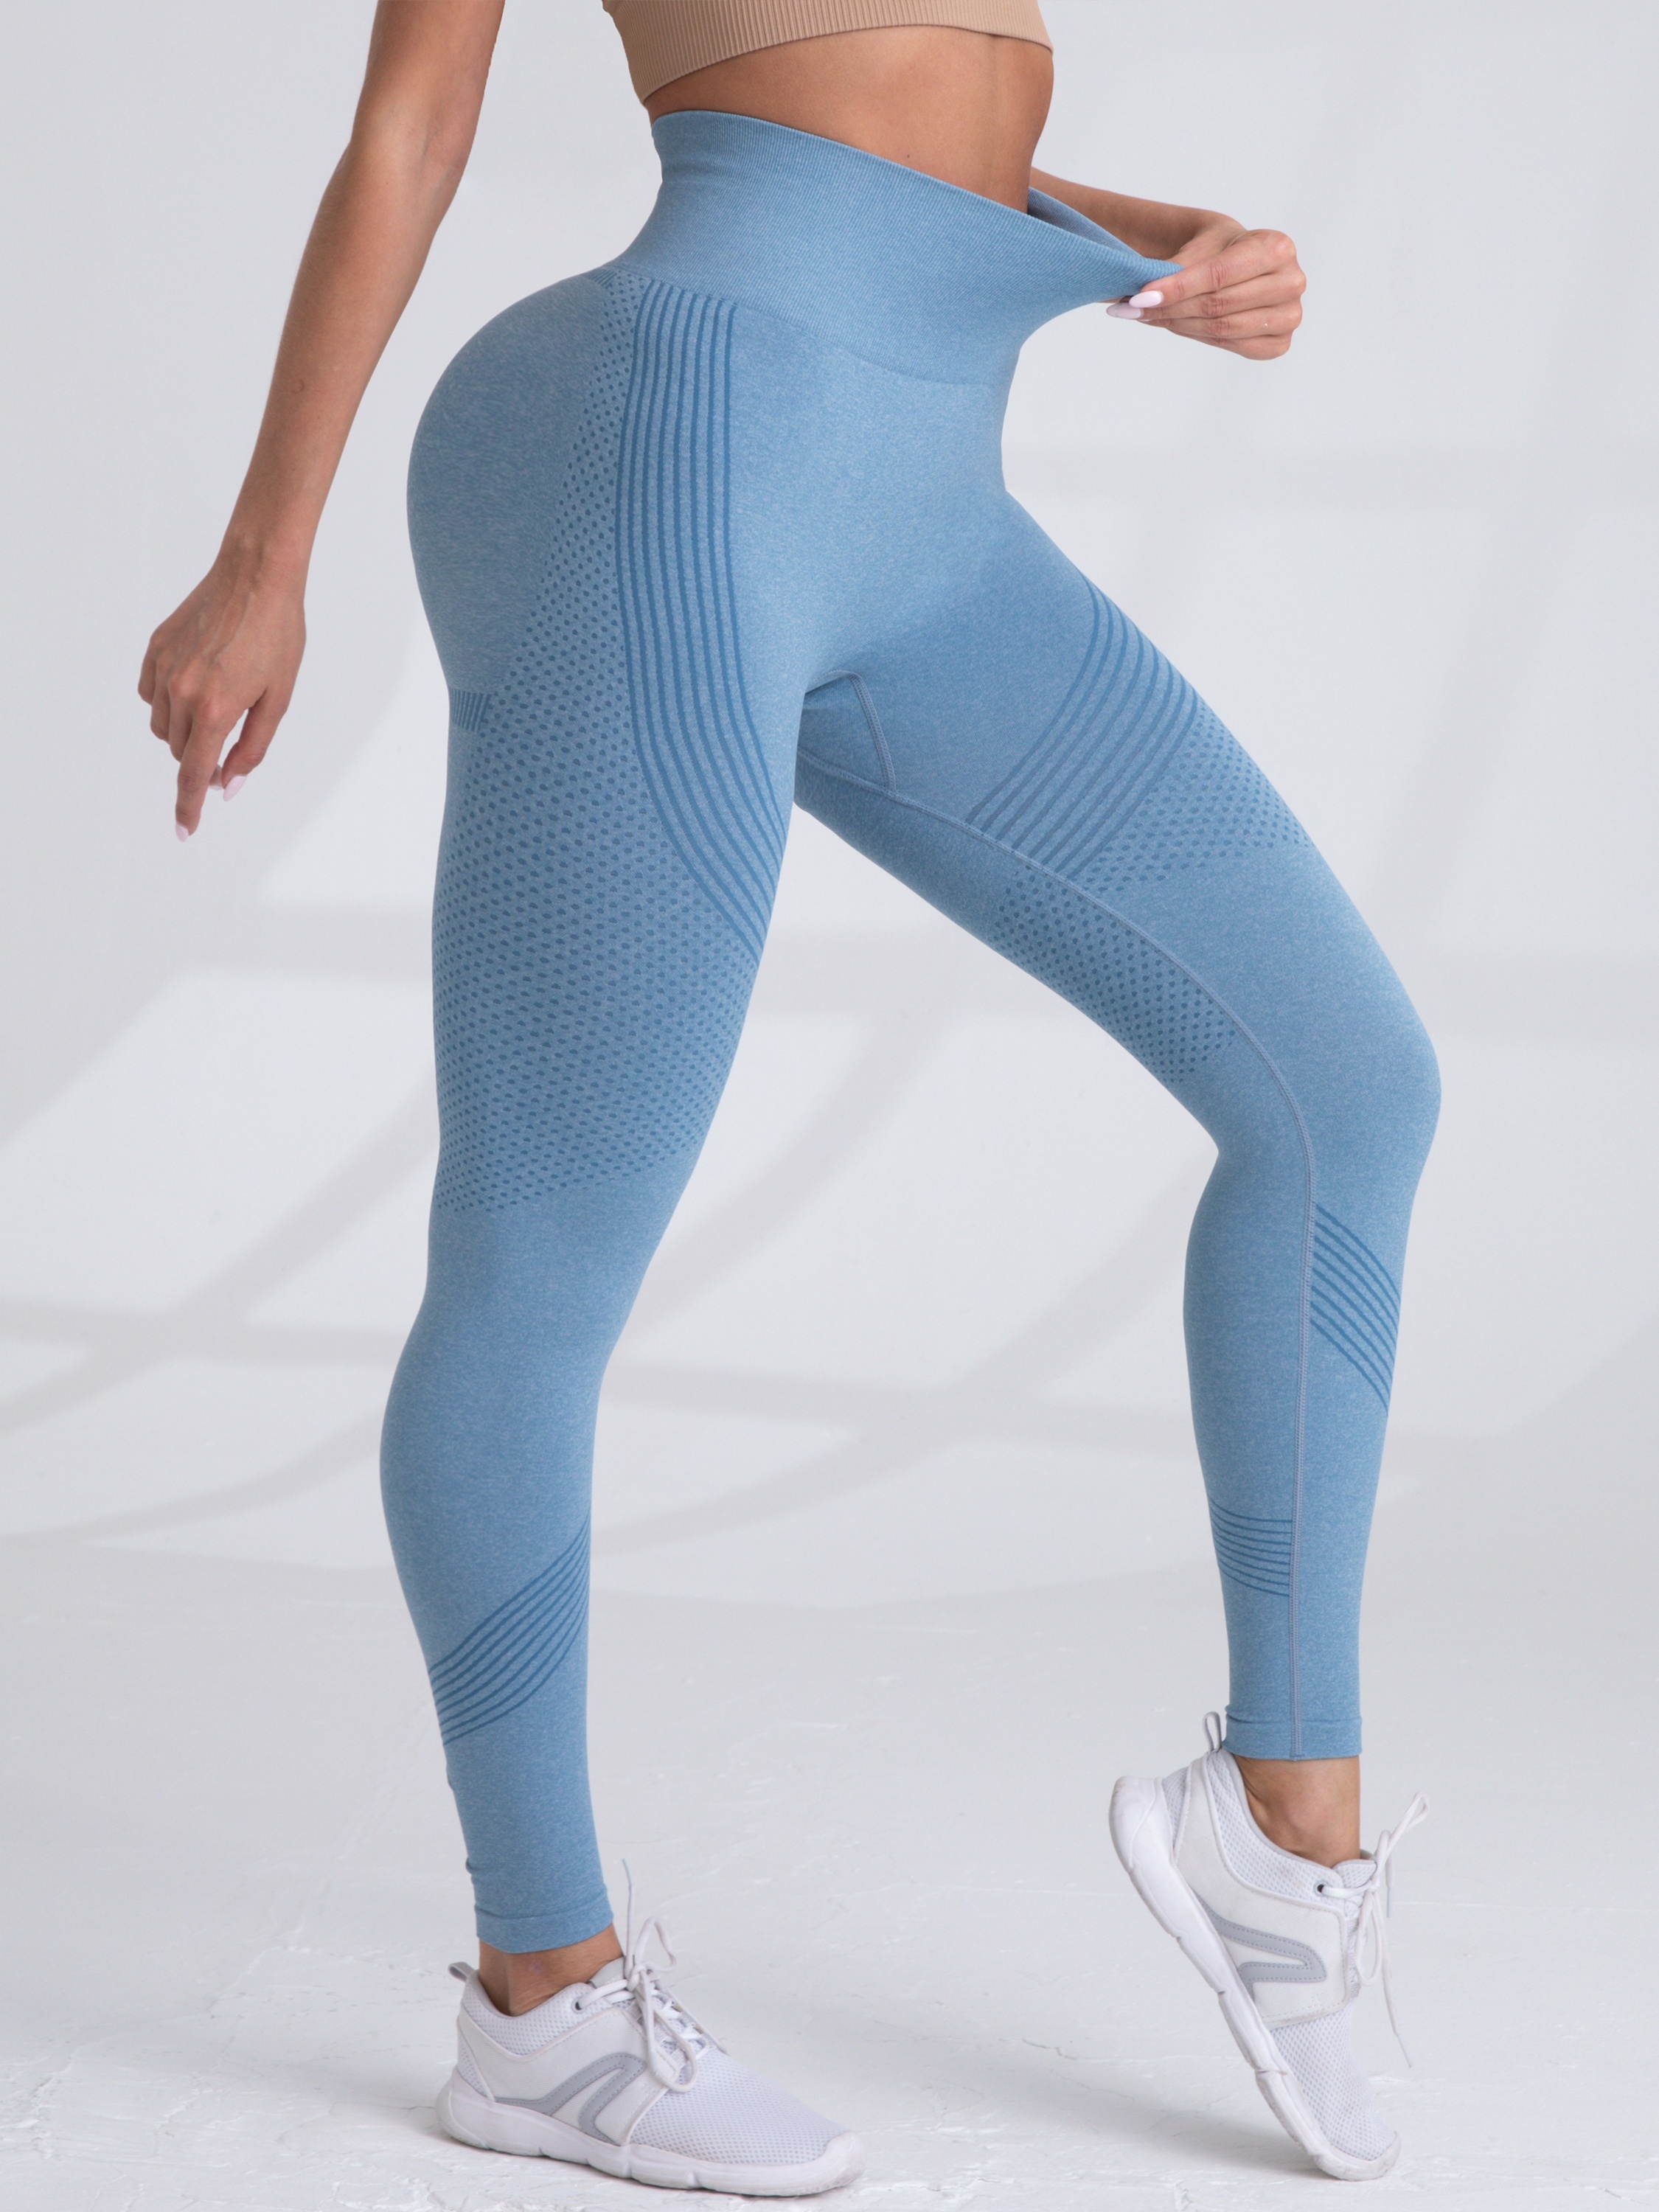 YWDJ Gym Leggings for Women High Waist Fashion Printed Hip Lifting Leisure  Fitness Yoga PantsBlueM 